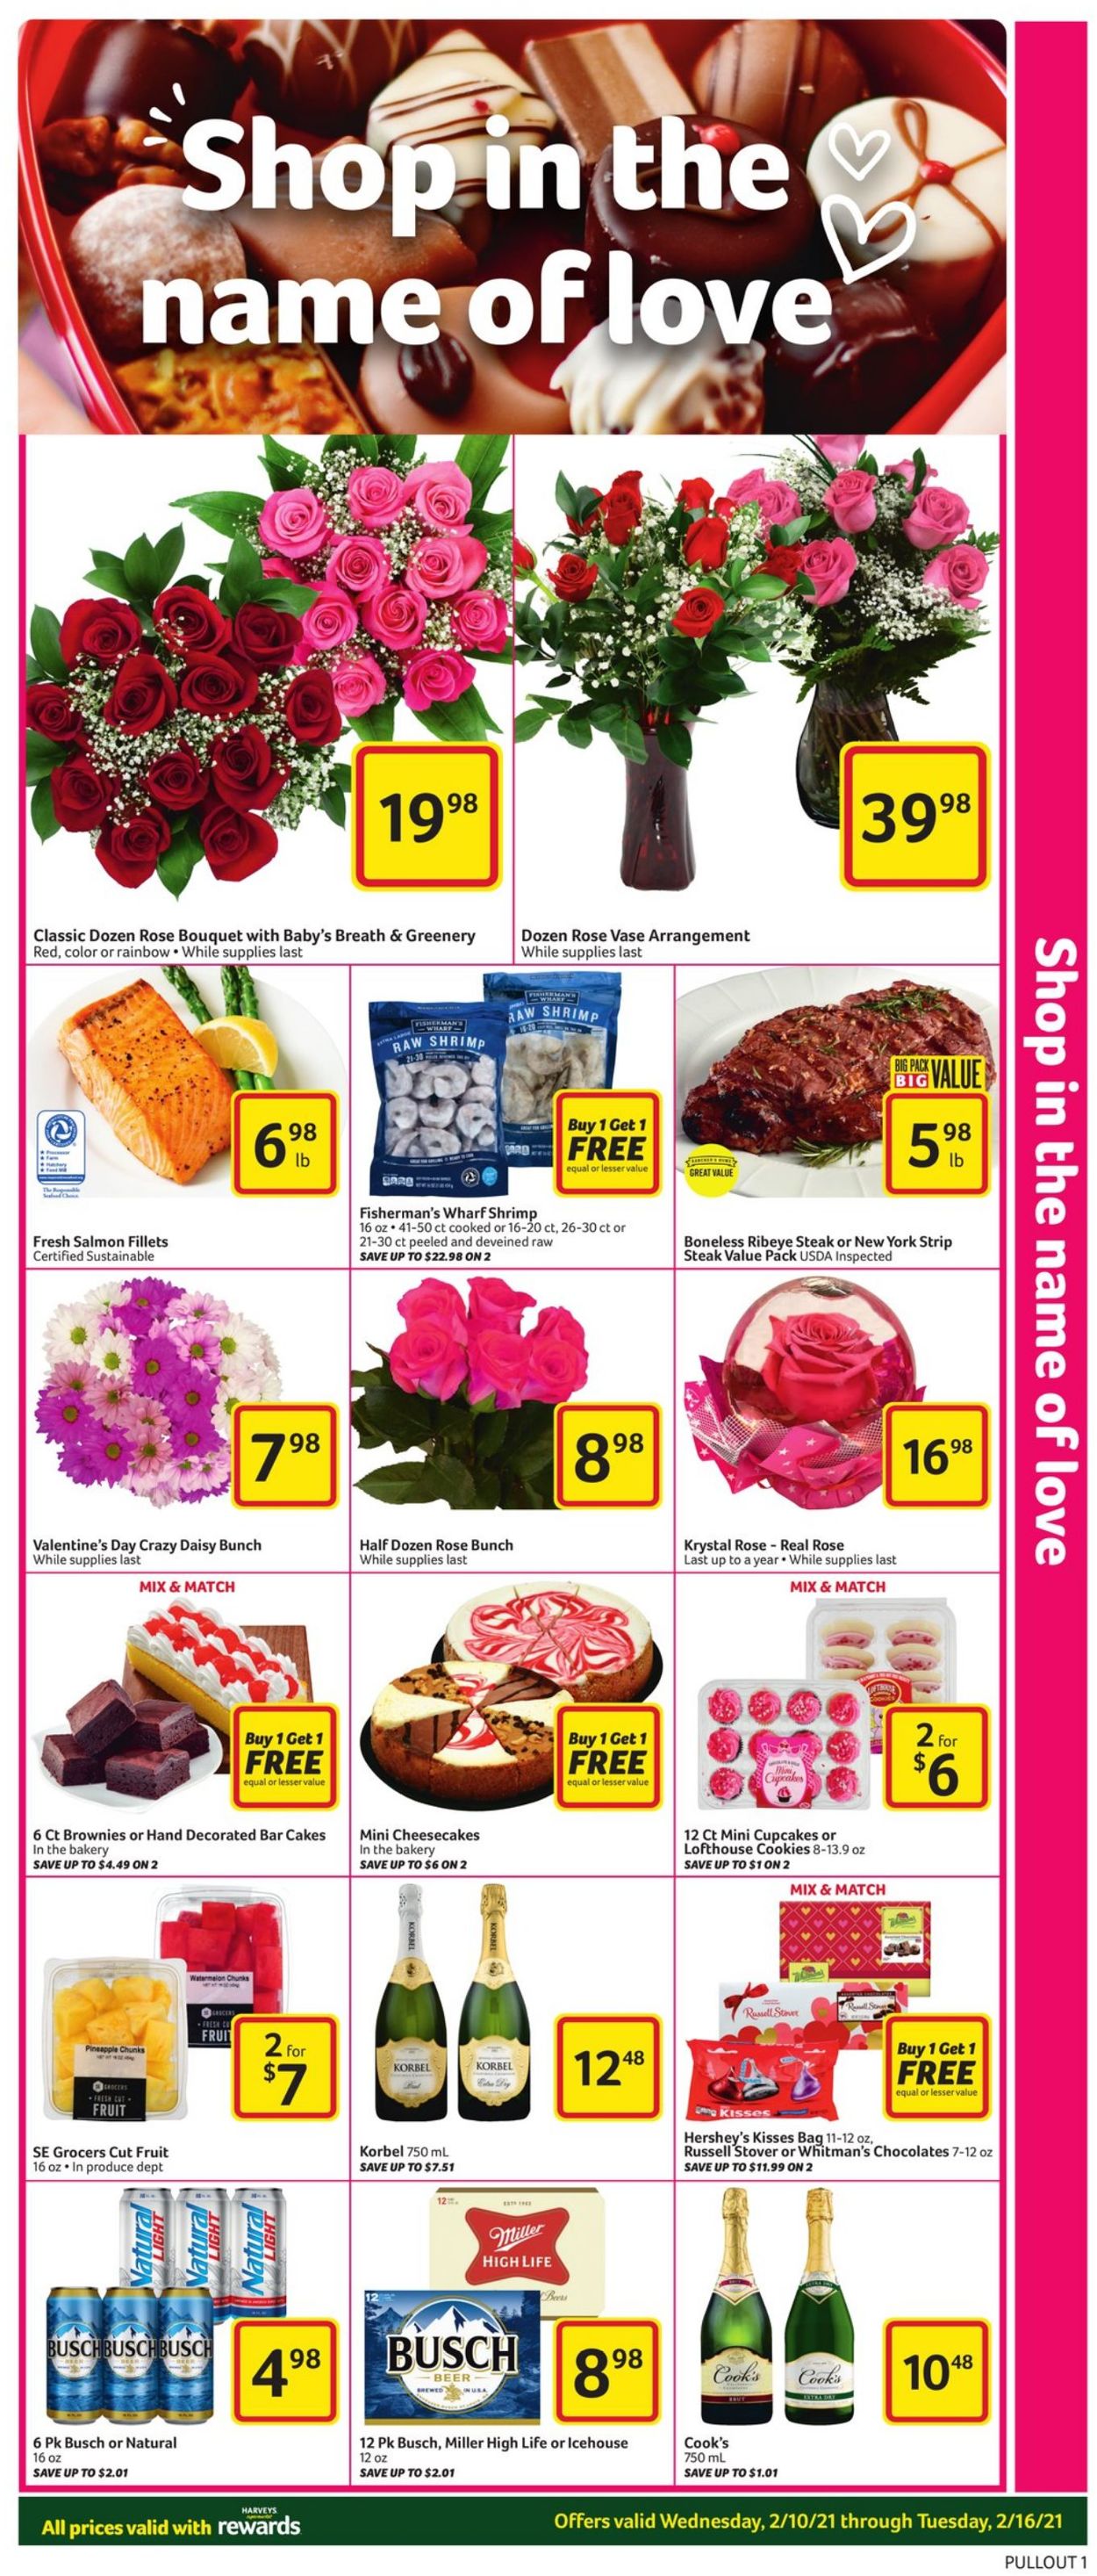 Catalogue Harveys Supermarket from 02/10/2021